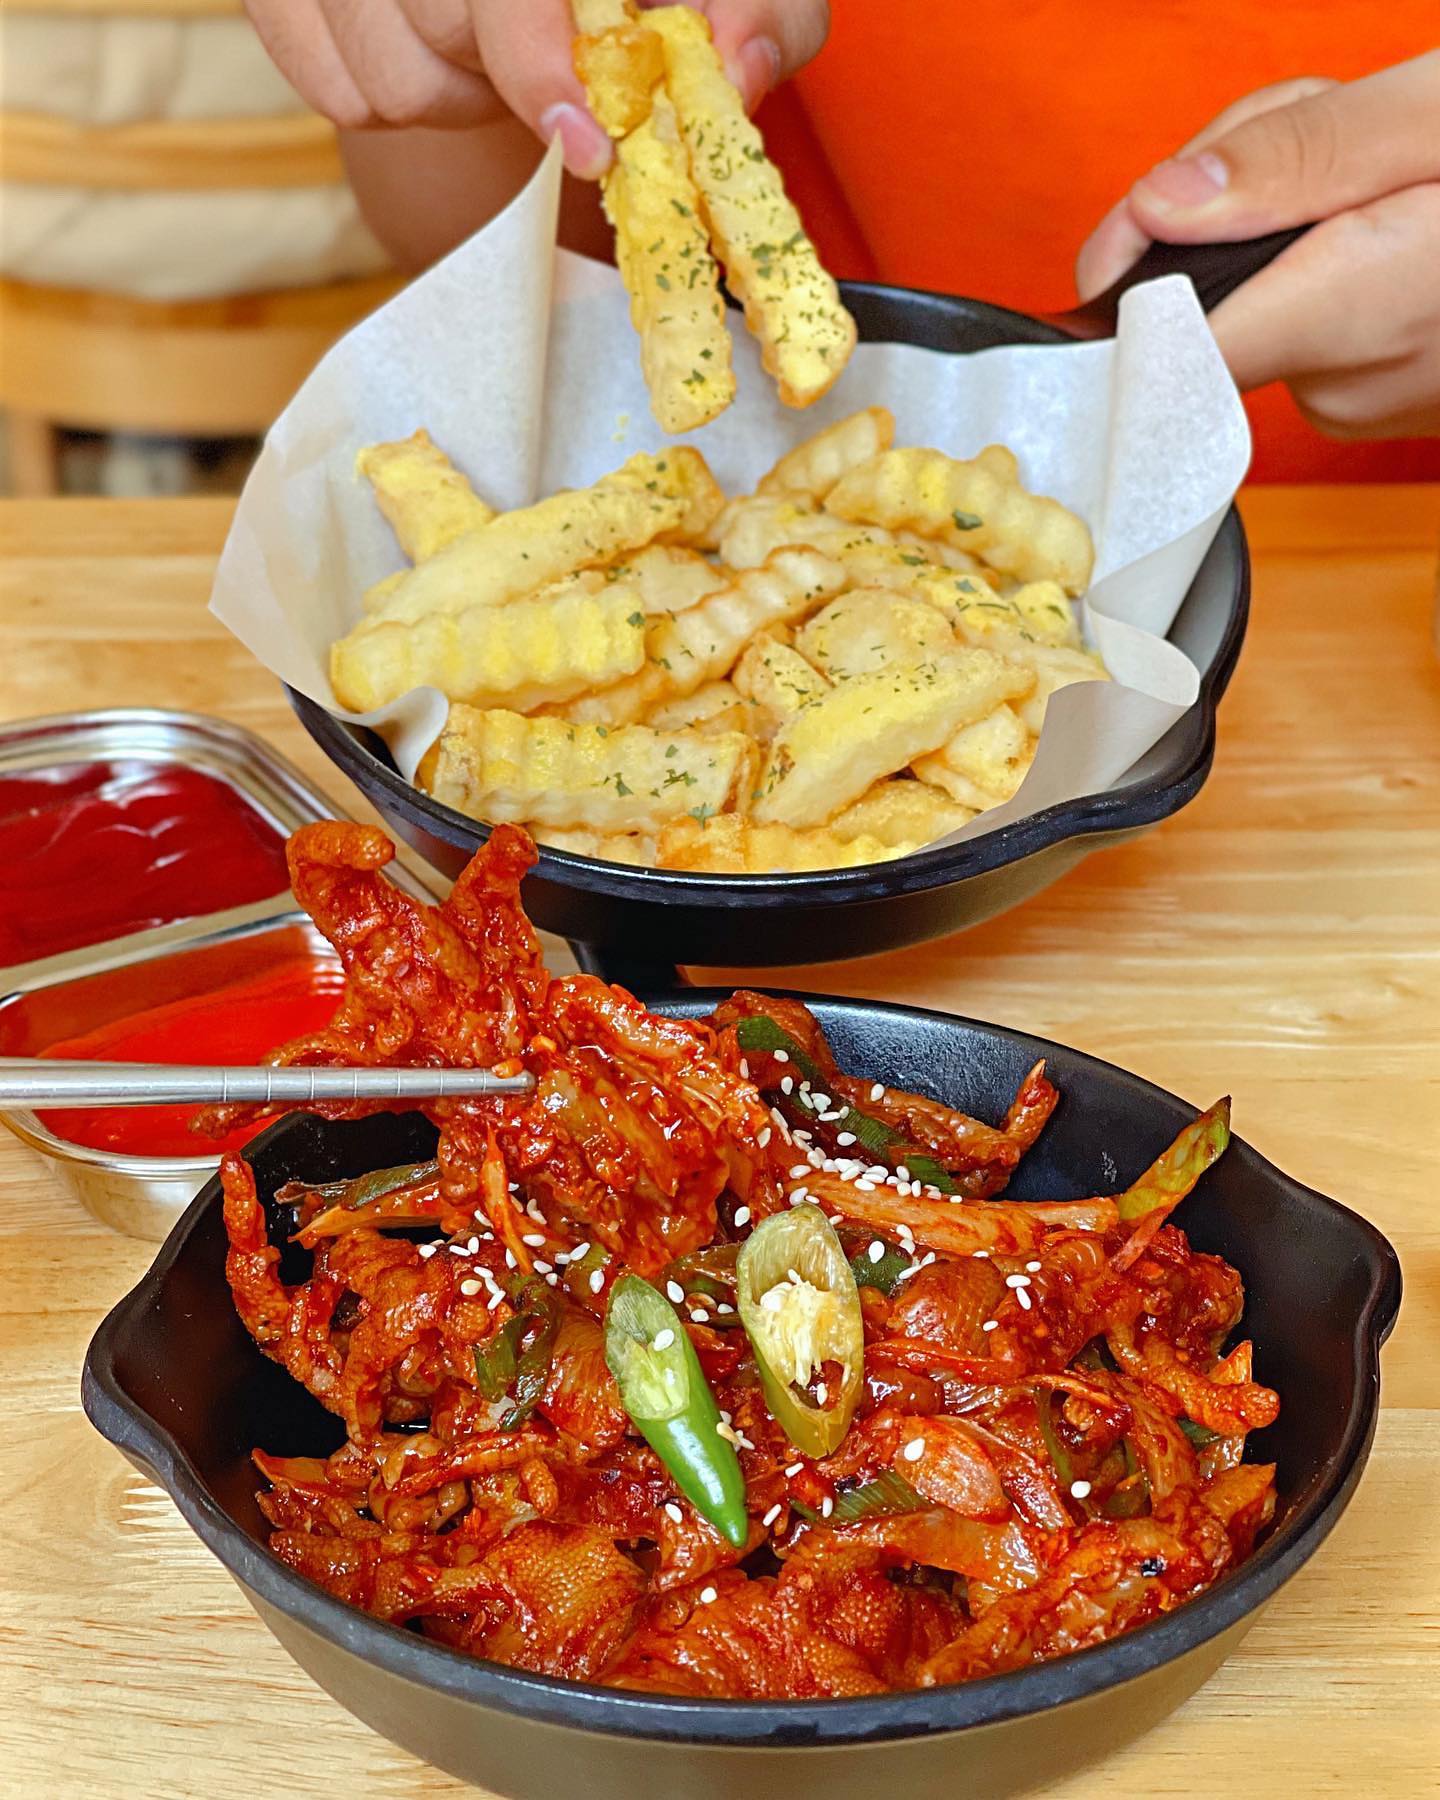 Kokoria Hàn Quốc - Chời ơi ta nói chân gà tẩm kim chi cay mà ngon, khoai tây chiên thì bự bự vậy nè ăn đã gì đâu luôn